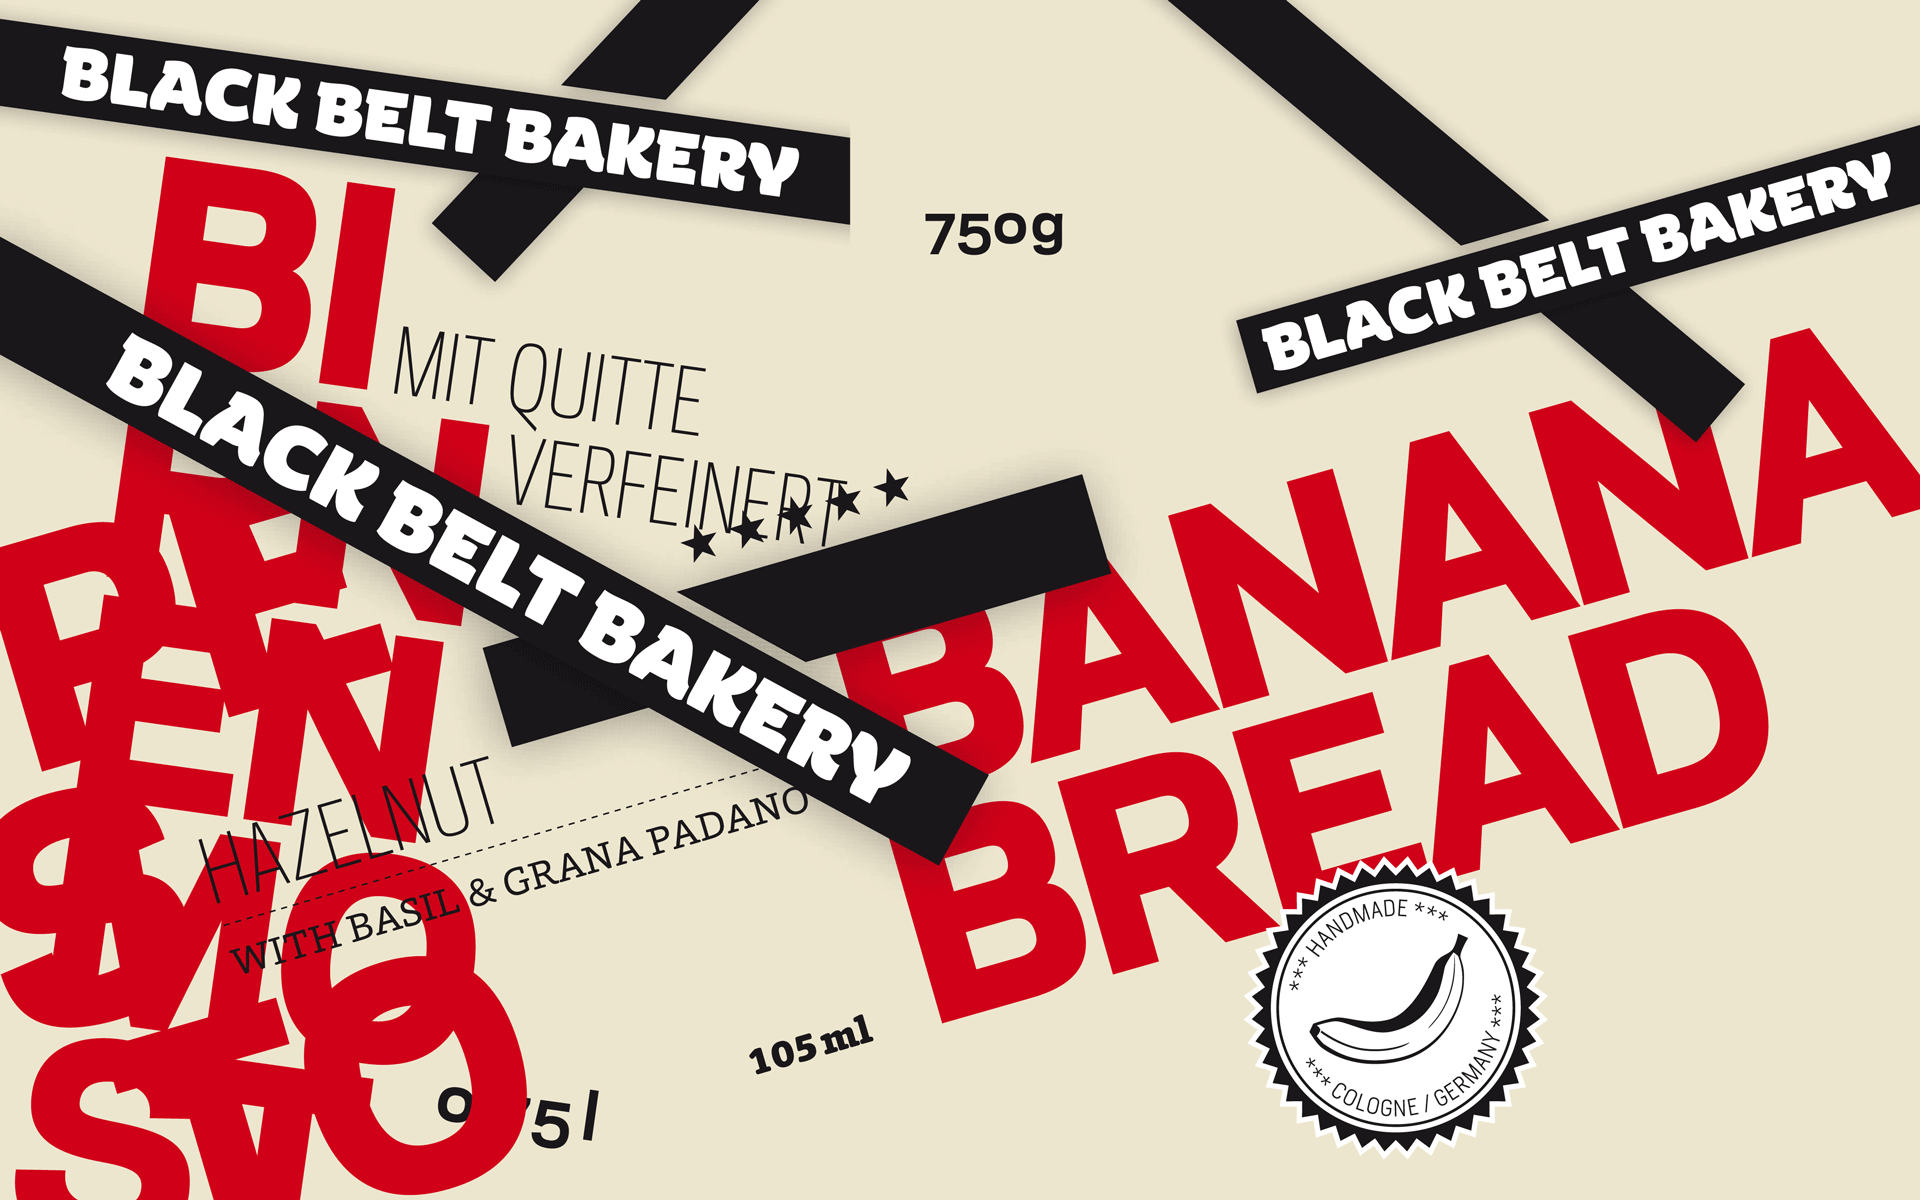 Black Belt Bakery Corporate Design, Gestaltungselemente, Balken, Schrift und Typografie